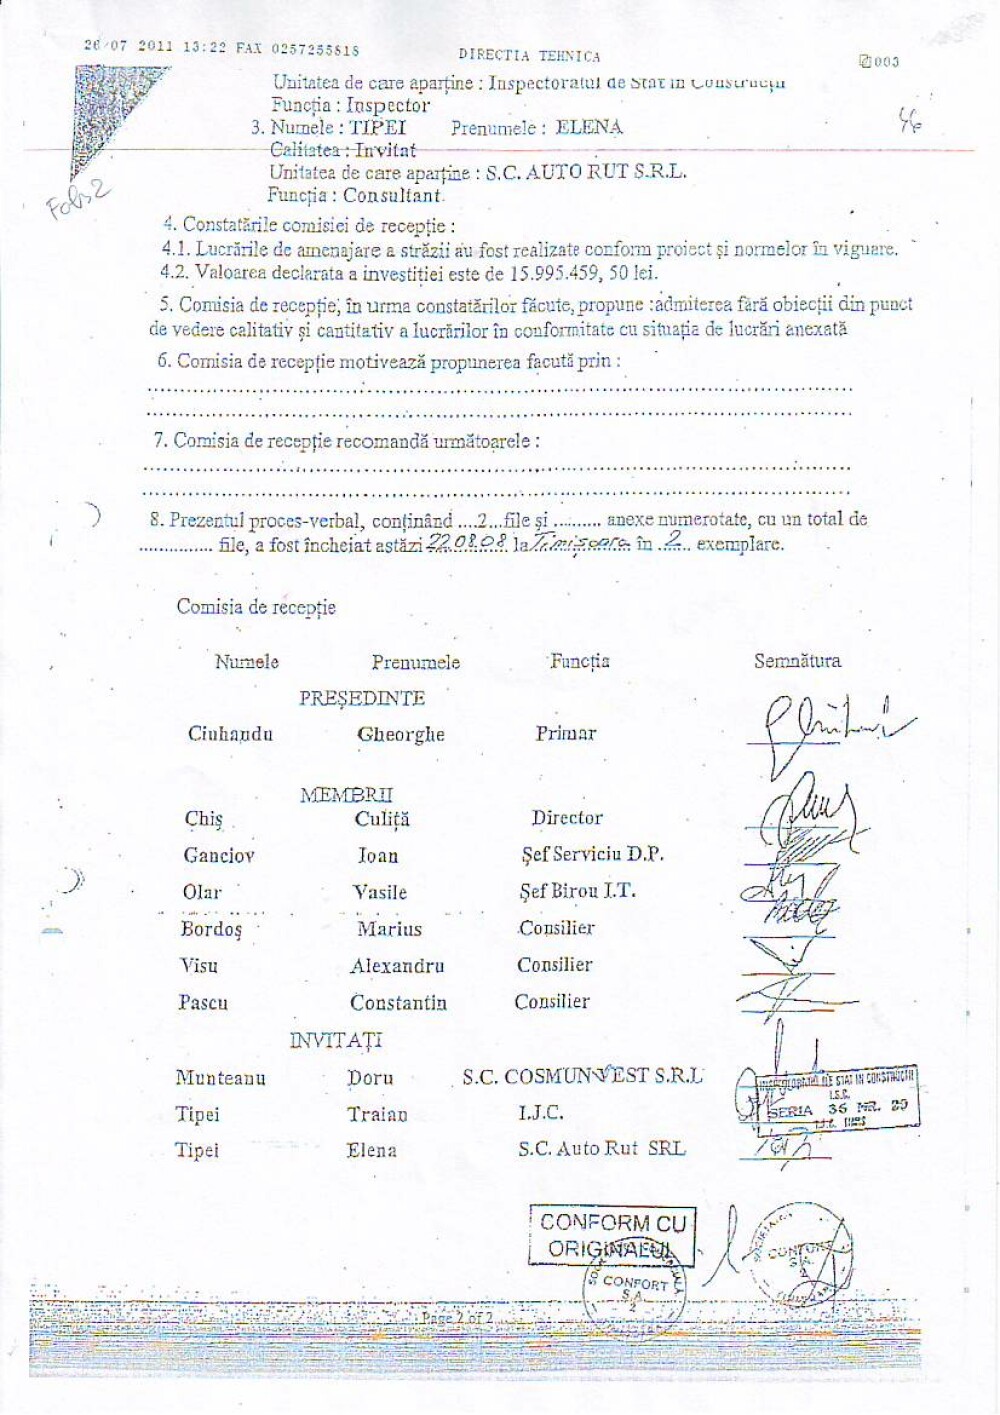 Explicatiile Primariei Timisoara: cum au fost falsificate sapte semnaturi pe documente oficiale - Imaginea 2